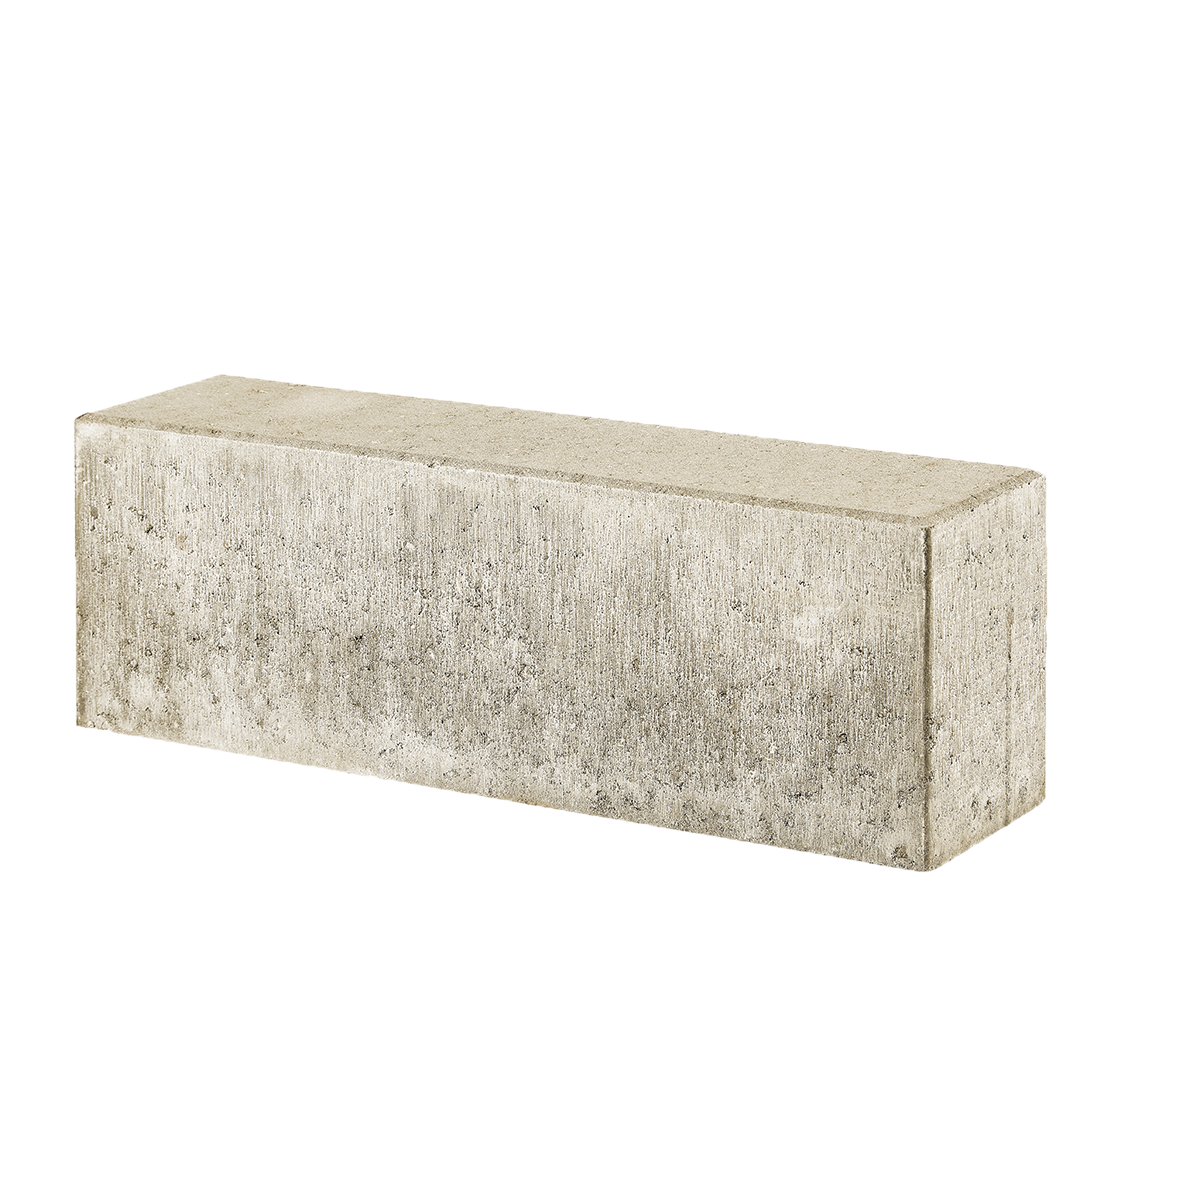 Albertslund-tiefbordrandsteine 15x20x60 cm Siena